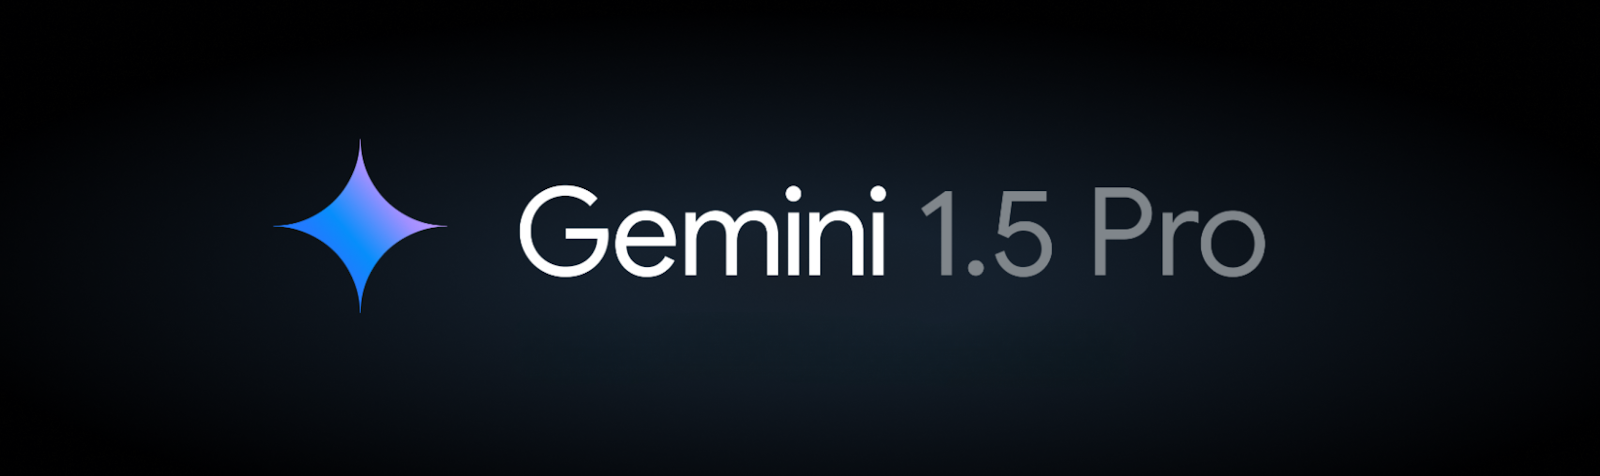 Gemini 1.5 Pro jetzt in über 180 Ländern verfügbar